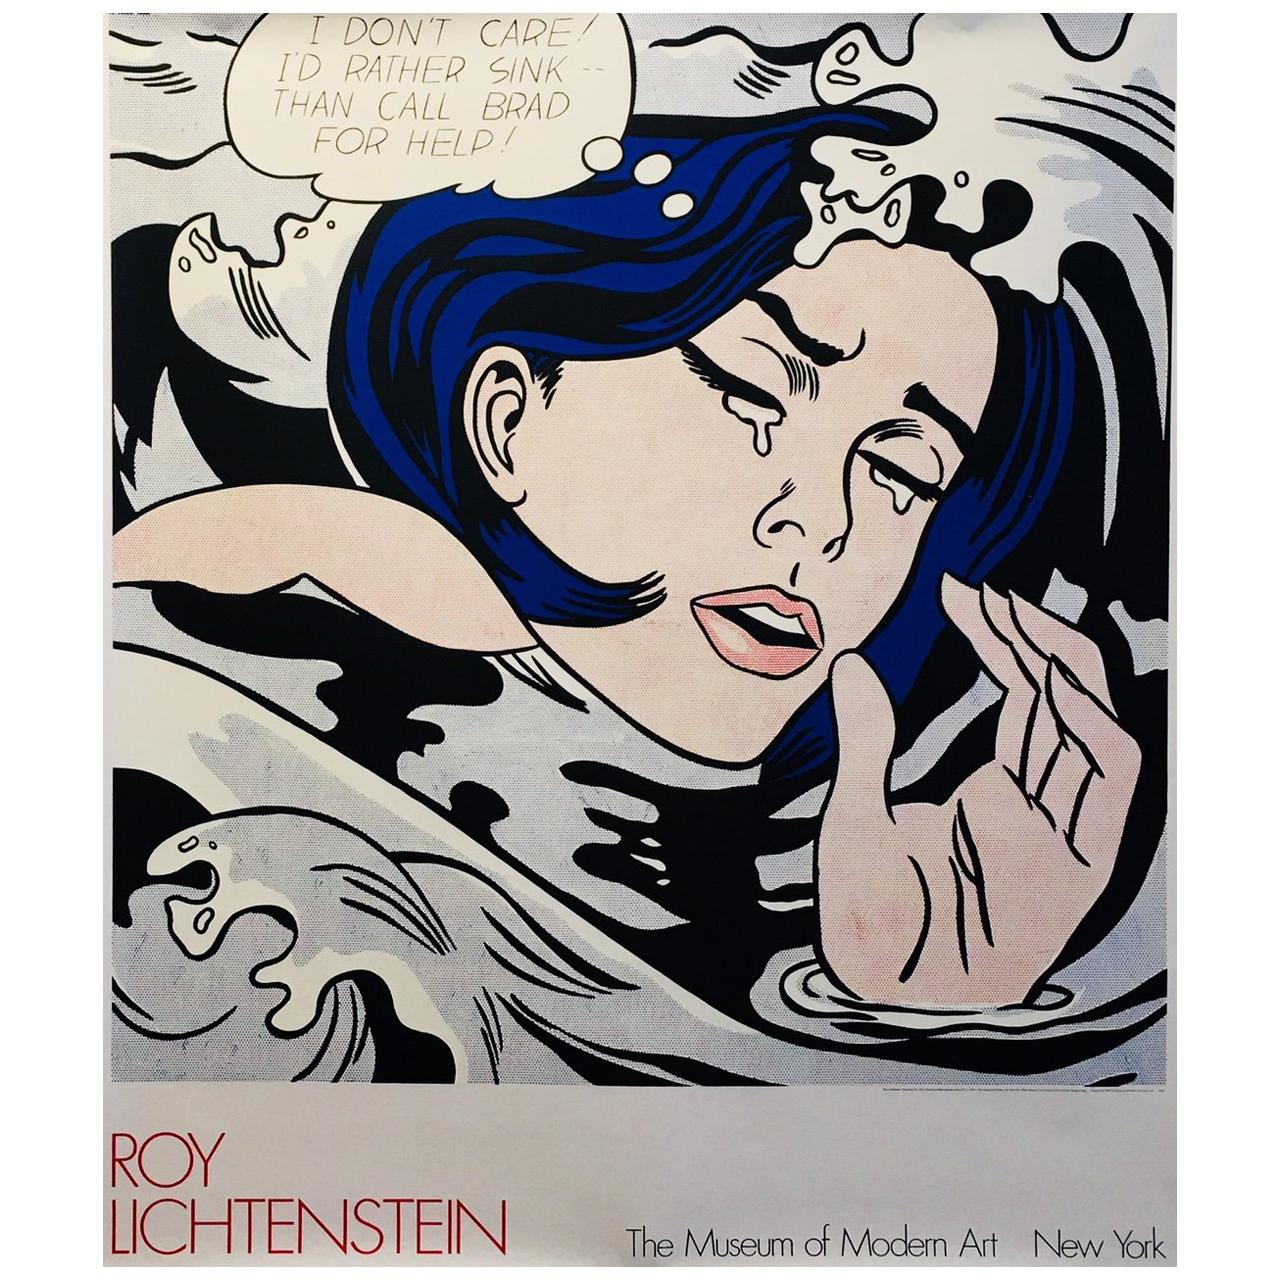 Vintage Poster, "I'd Rather Drown" by Roy Lichtenstein, 1980